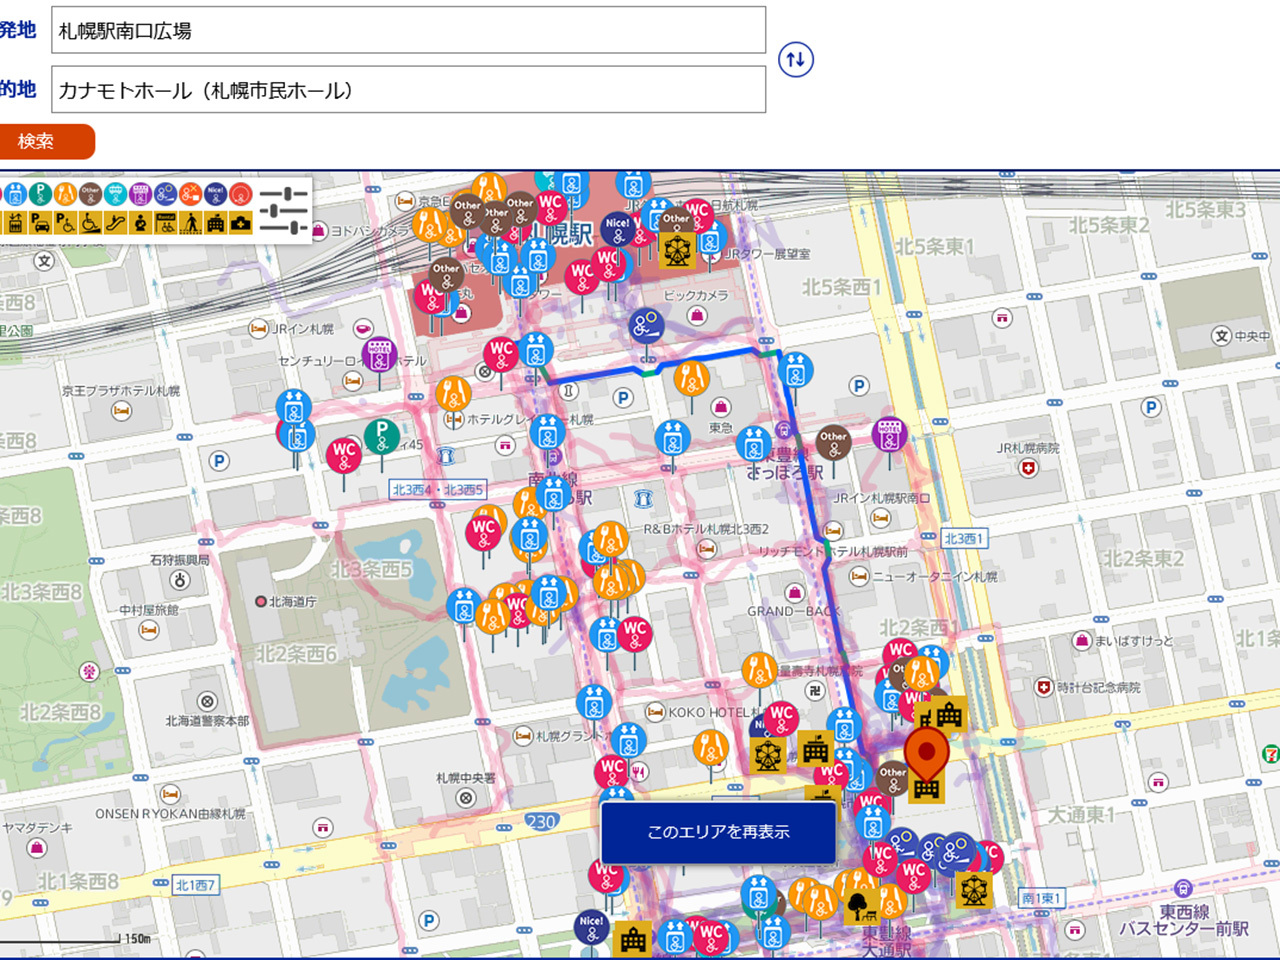 札幌市、ウェブにバリアフリー地図--ANAらのUniversal MaaS活用、政令指定都市初 - CNET Japan